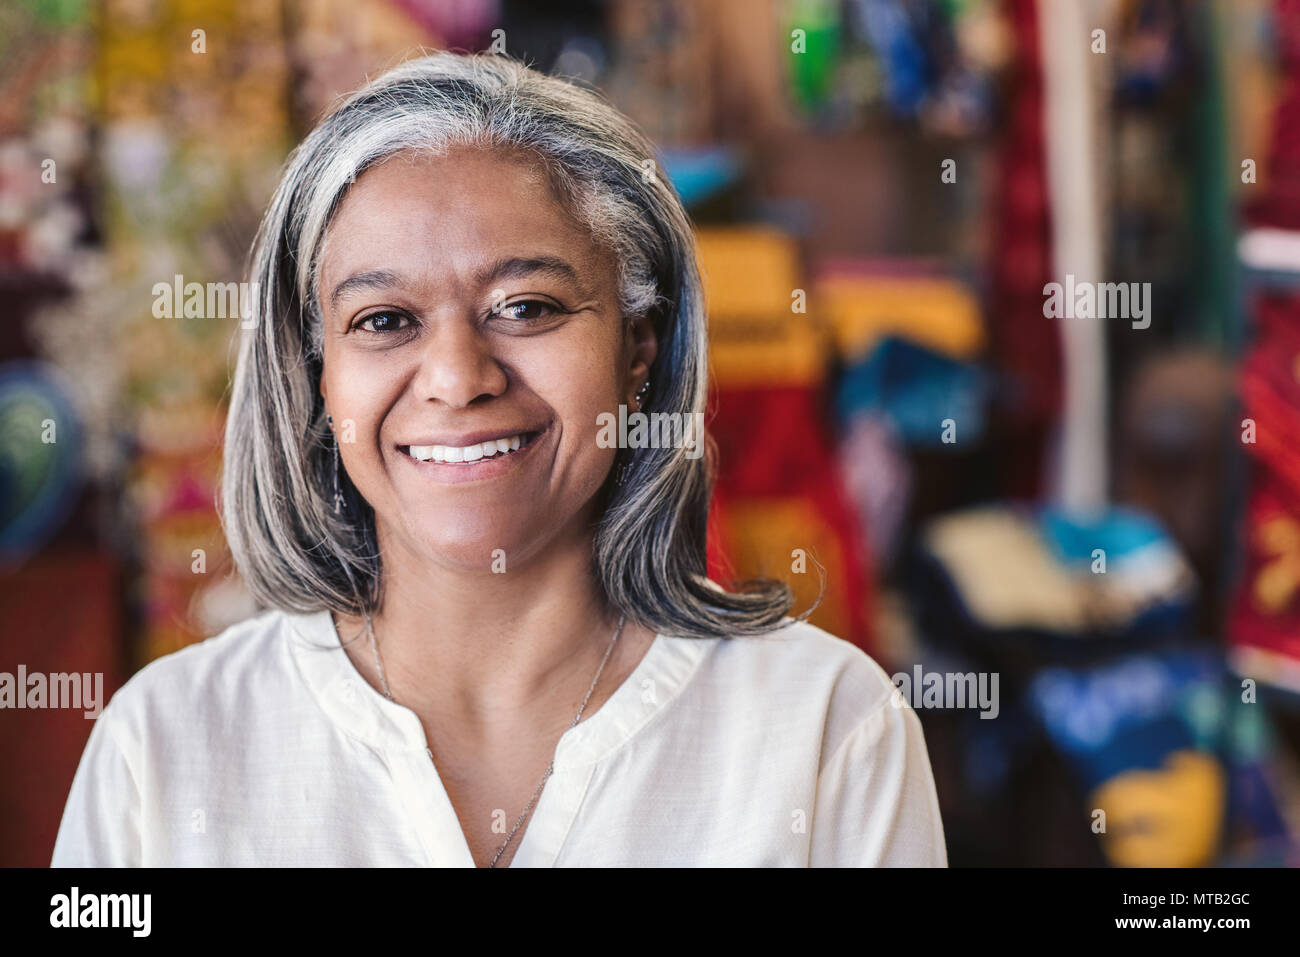 Porträt eines lächelnden Reife fabric store Inhaber stehen in Ihrem Shop mit bunten Tüchern und Textilien auf Regalen in den Hintergrund Stockfoto